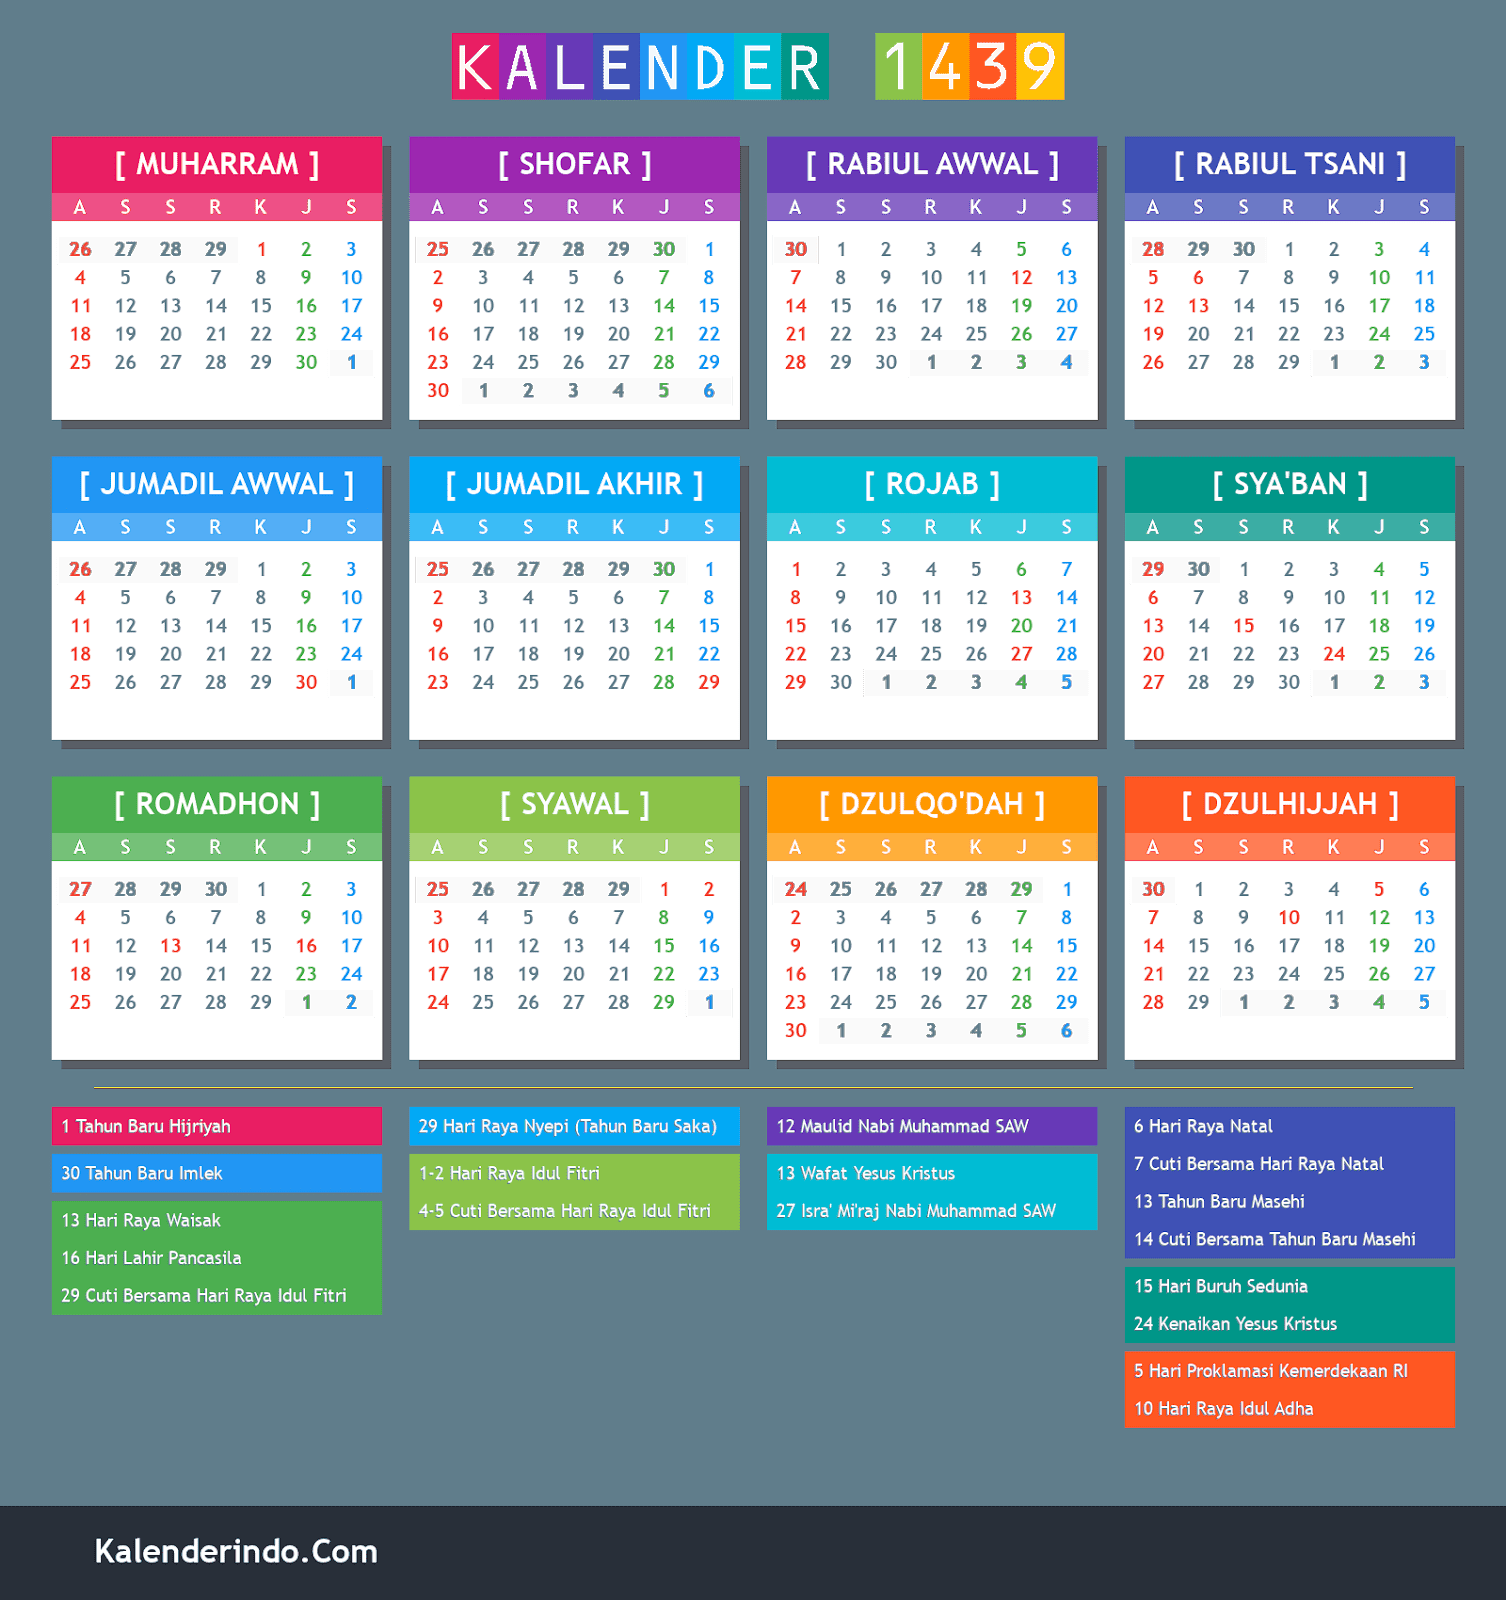 Kalender Hijriyah Online 1439